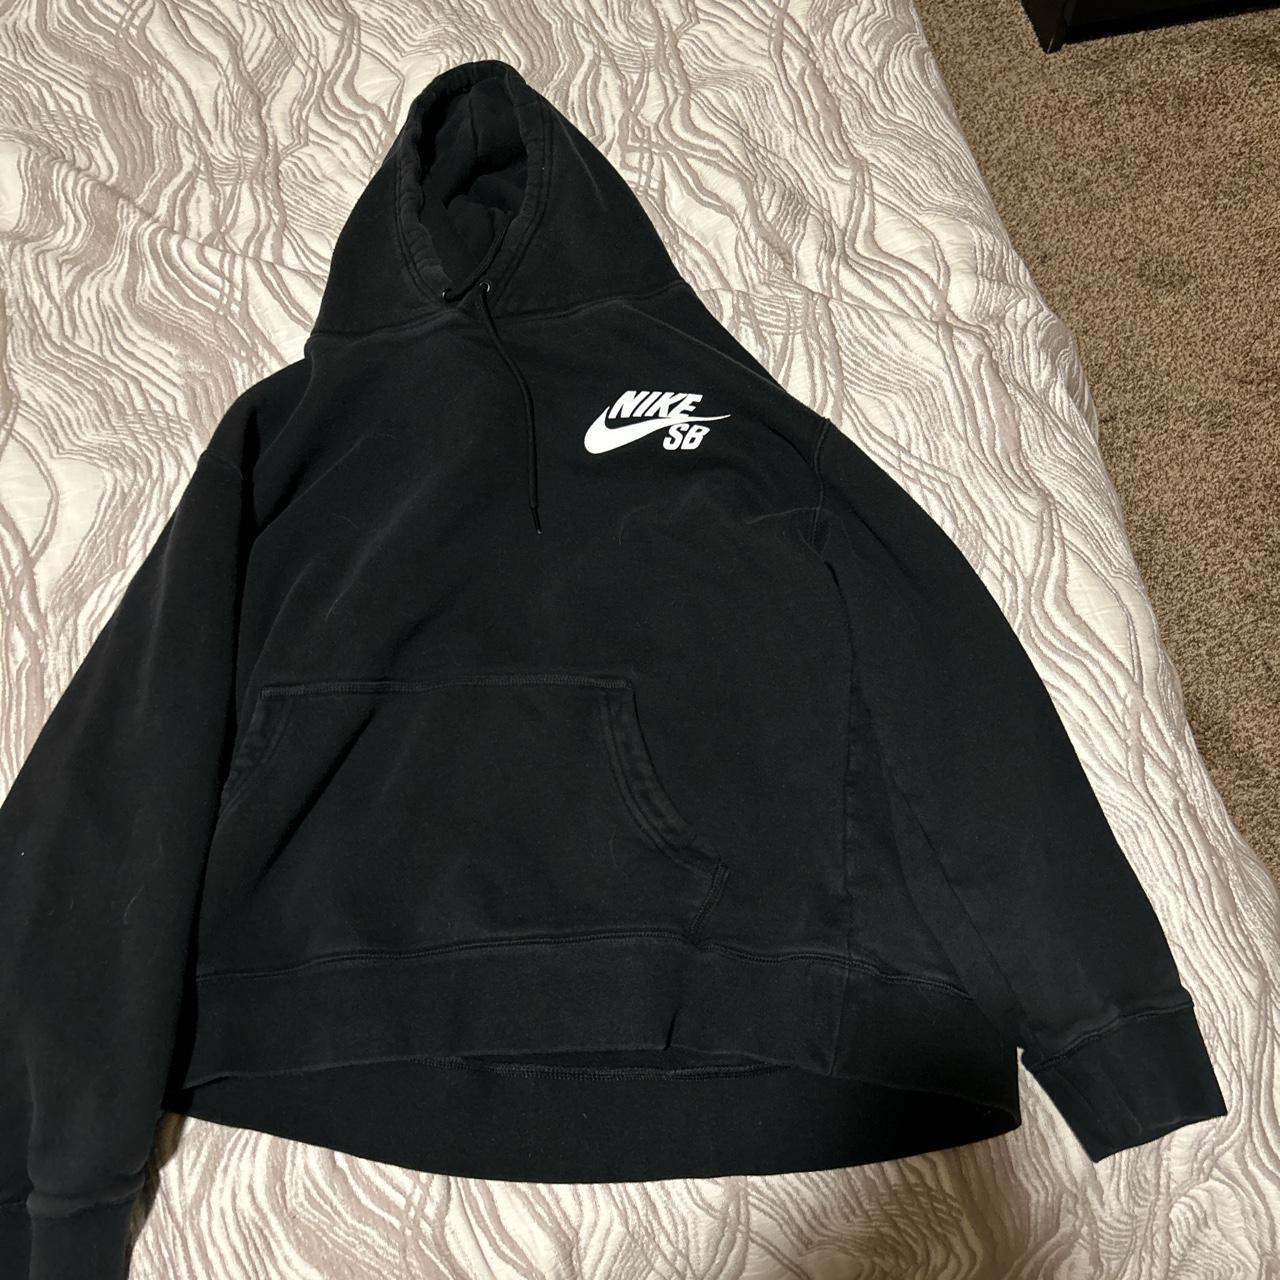 Large black Nike sb hoodie - Depop